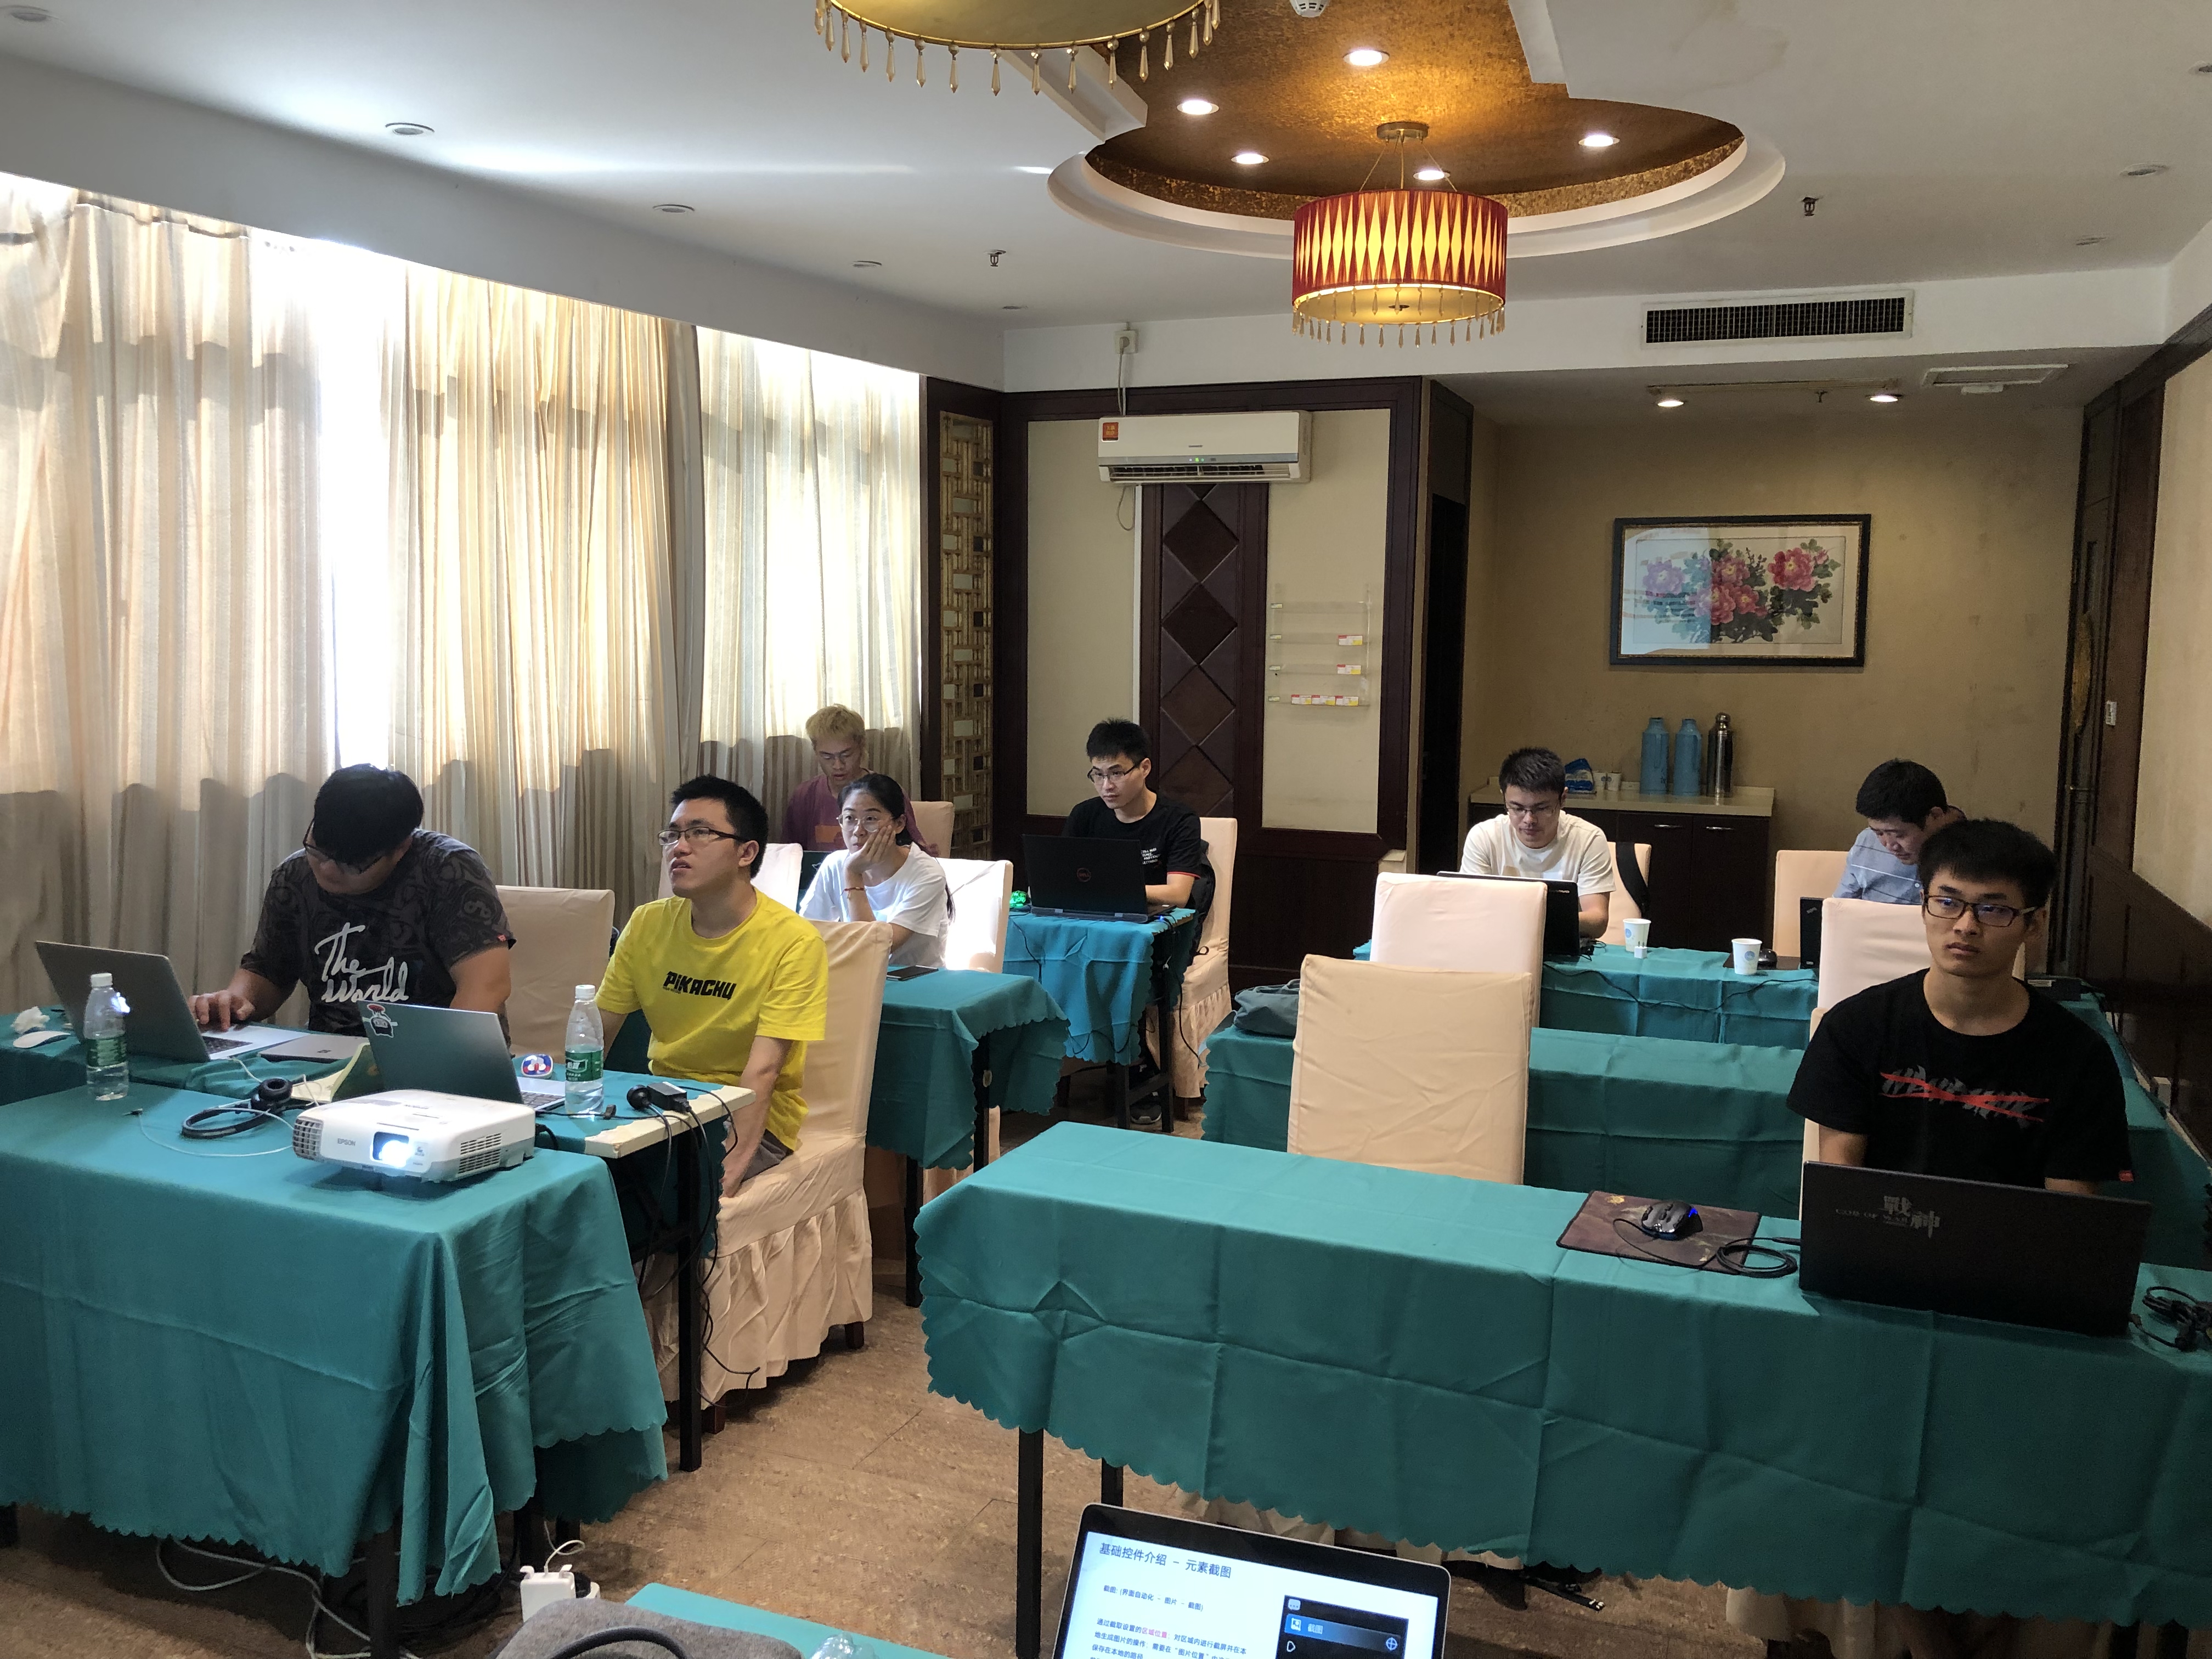 iS-RPA 技术认证培训 南京 20190830 班 - 培训完成